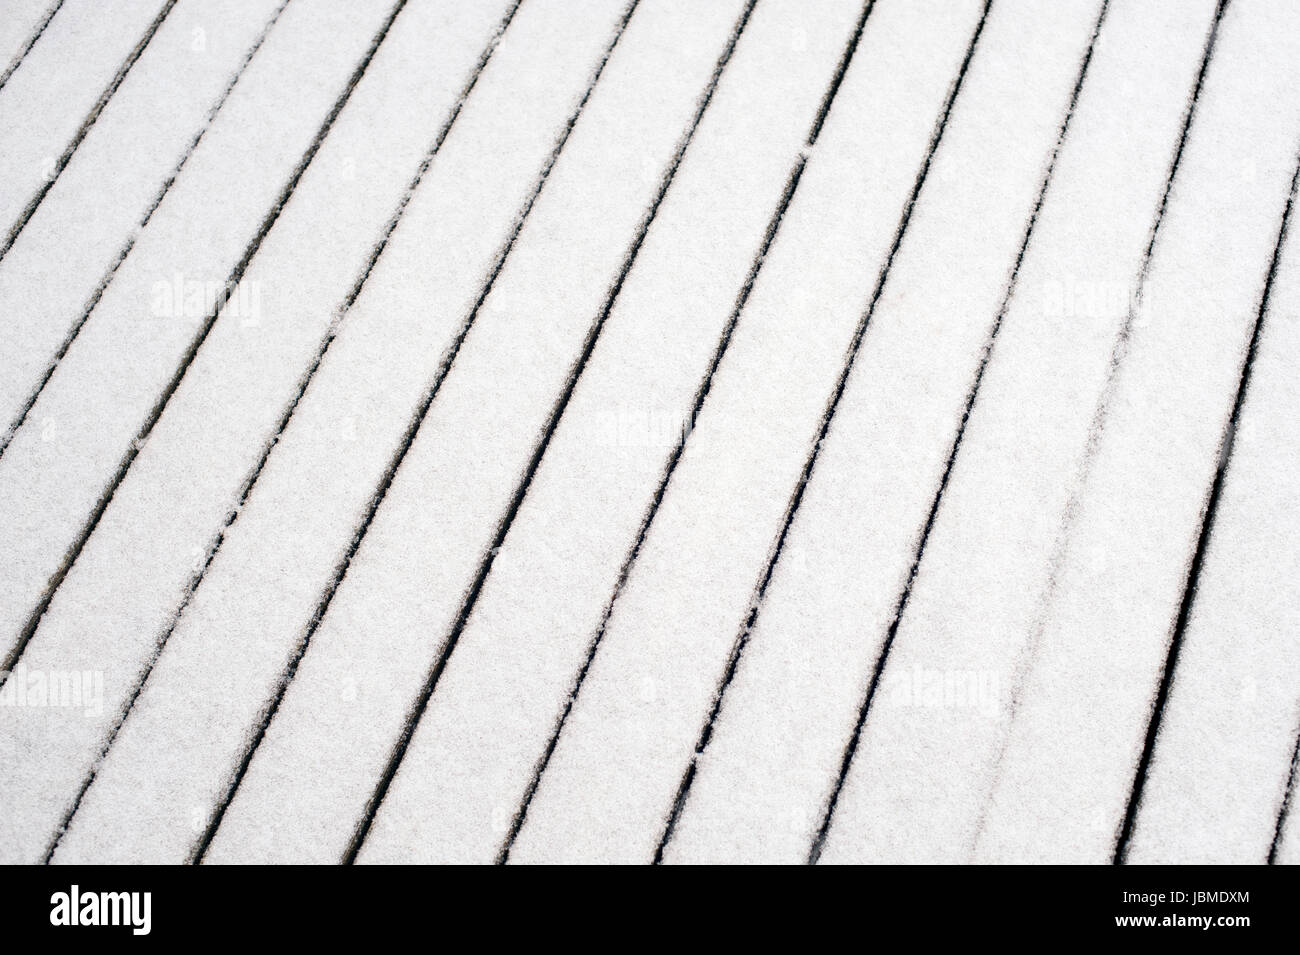 Ponte di legno con spolvero di snow making patterns Foto Stock